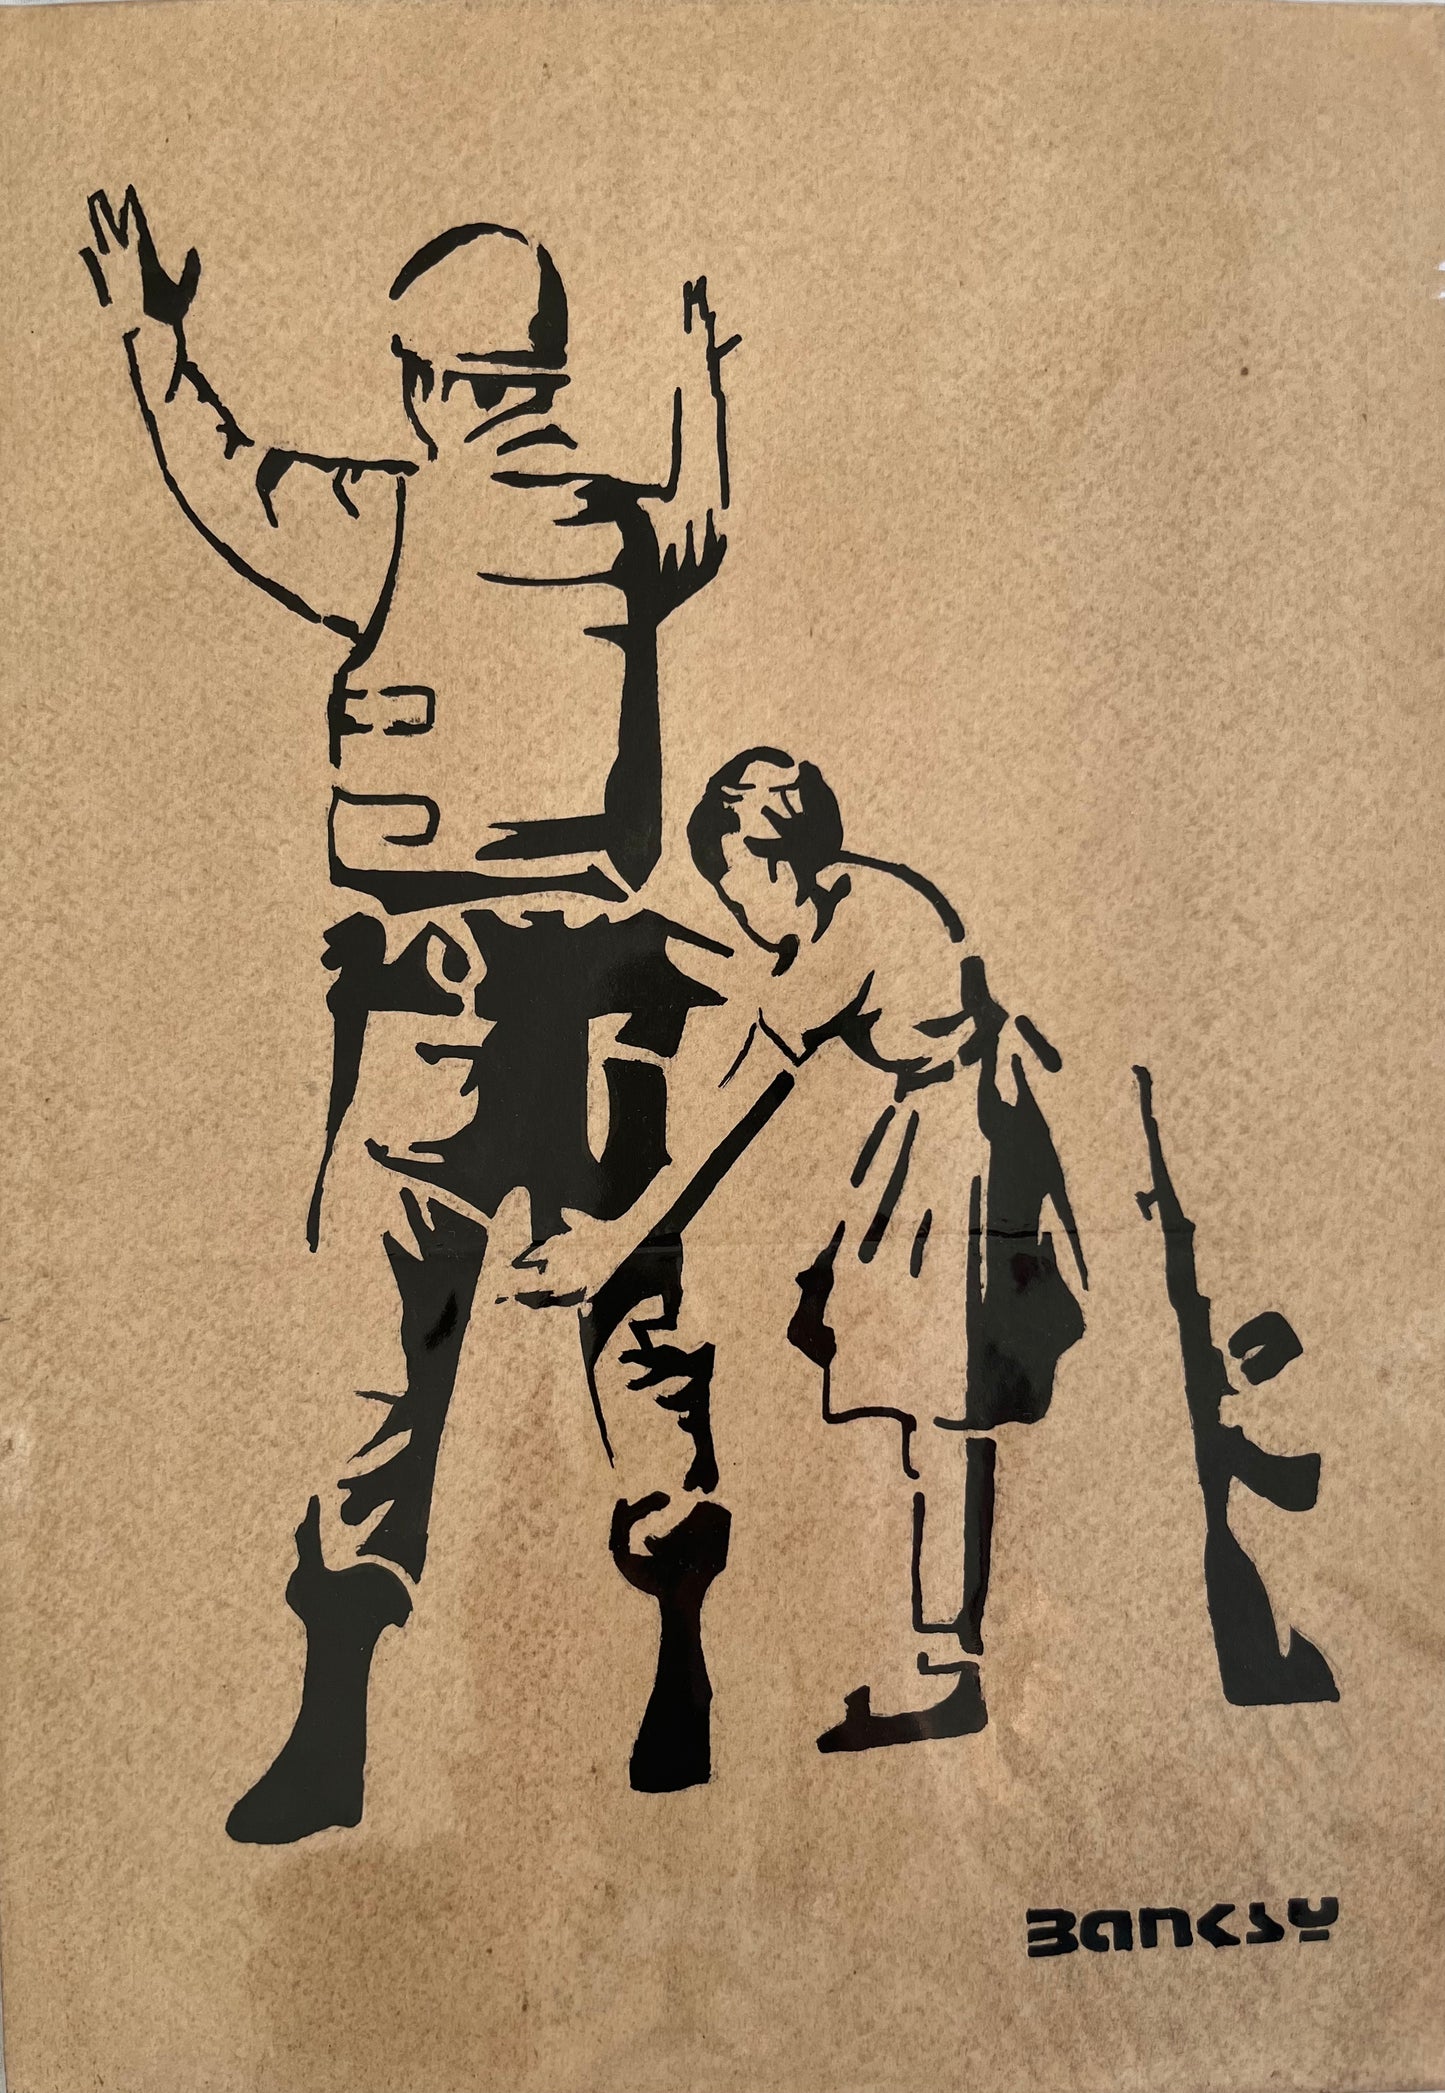 BANKSY x TATE - Girl Frisking Soldier - Dibujo sobre papel de arte